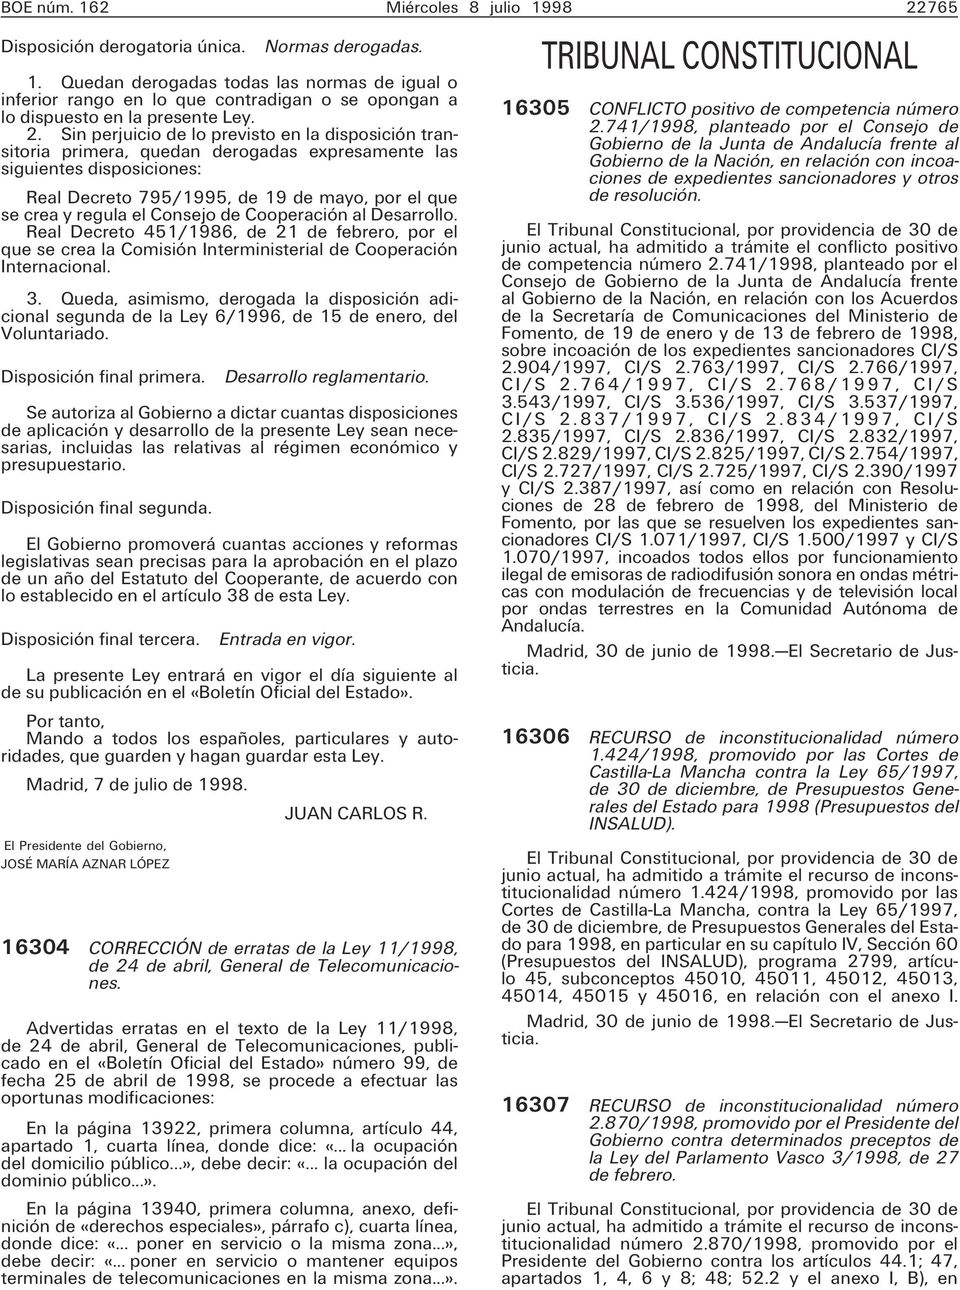 Consejo de Cooperación al Desarrollo. Real Decreto 451/1986, de 21 de febrero, por el que se crea la Comisión Interministerial de Cooperación Internacional. 3.